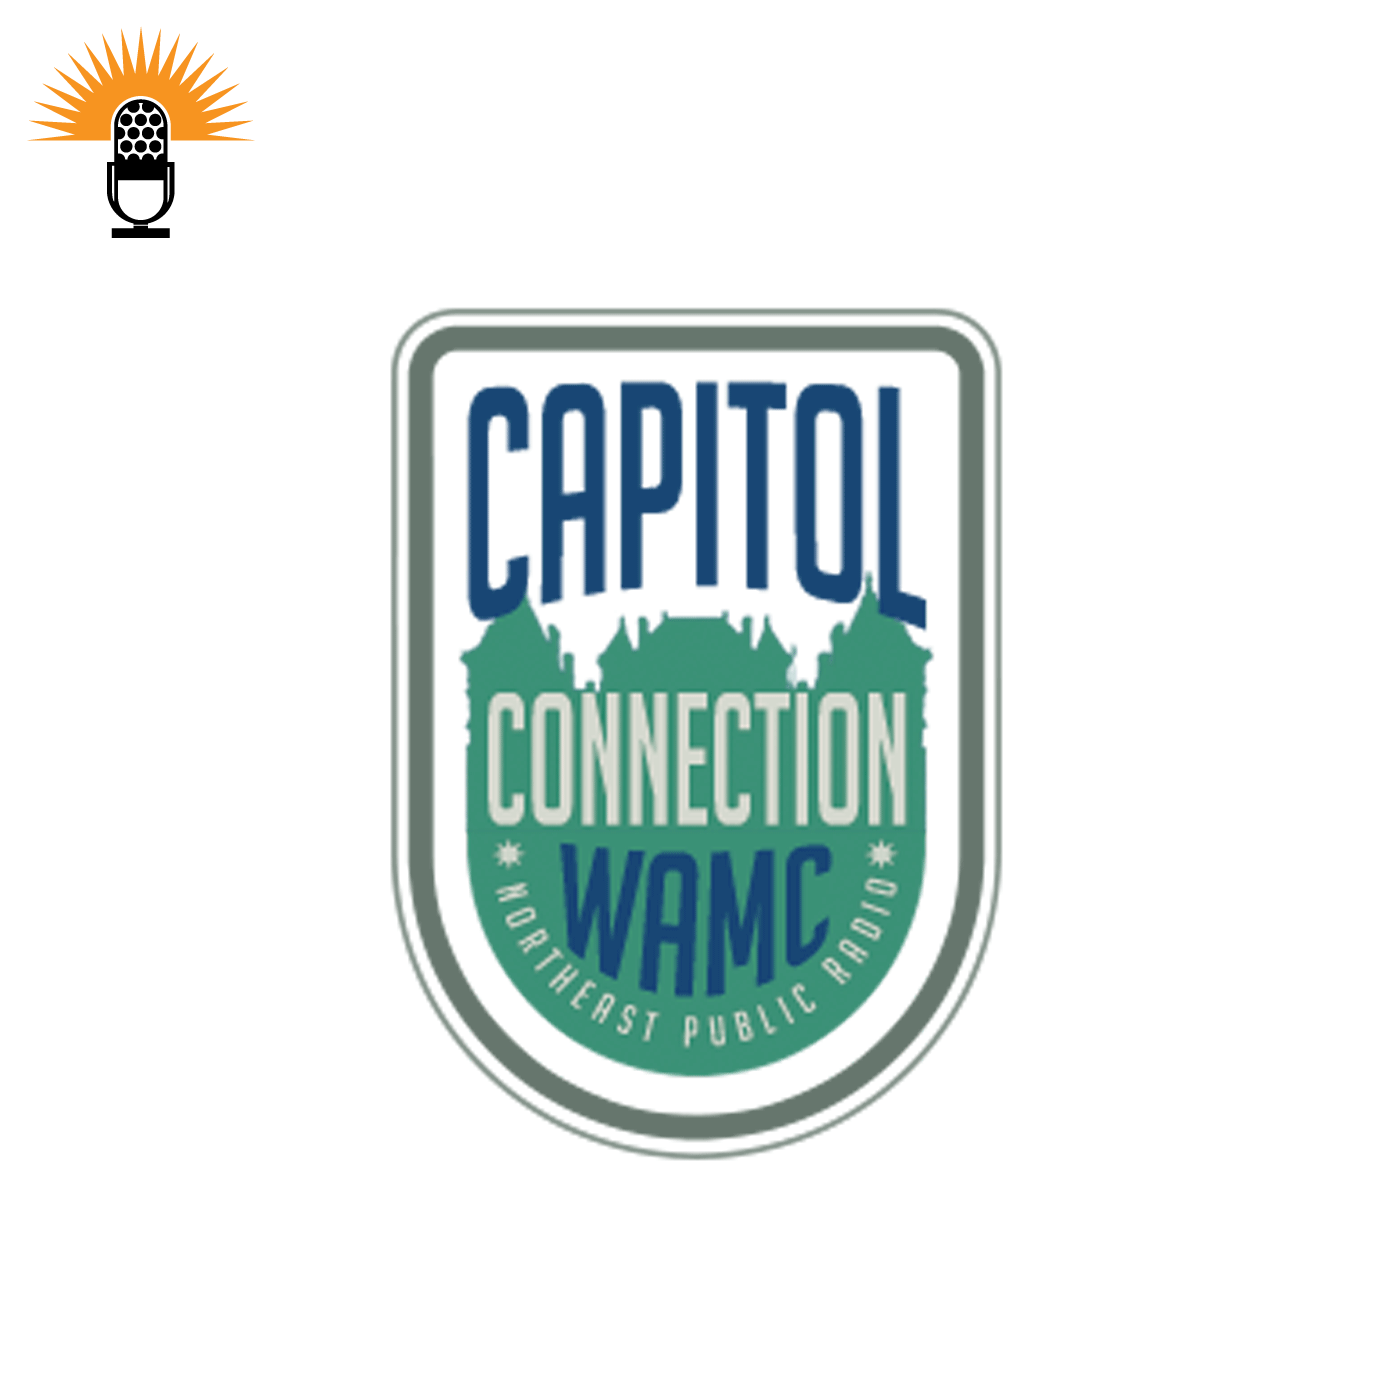 The Capitol Connection - Deanna Fox, CEO of the New York Farm Bureau